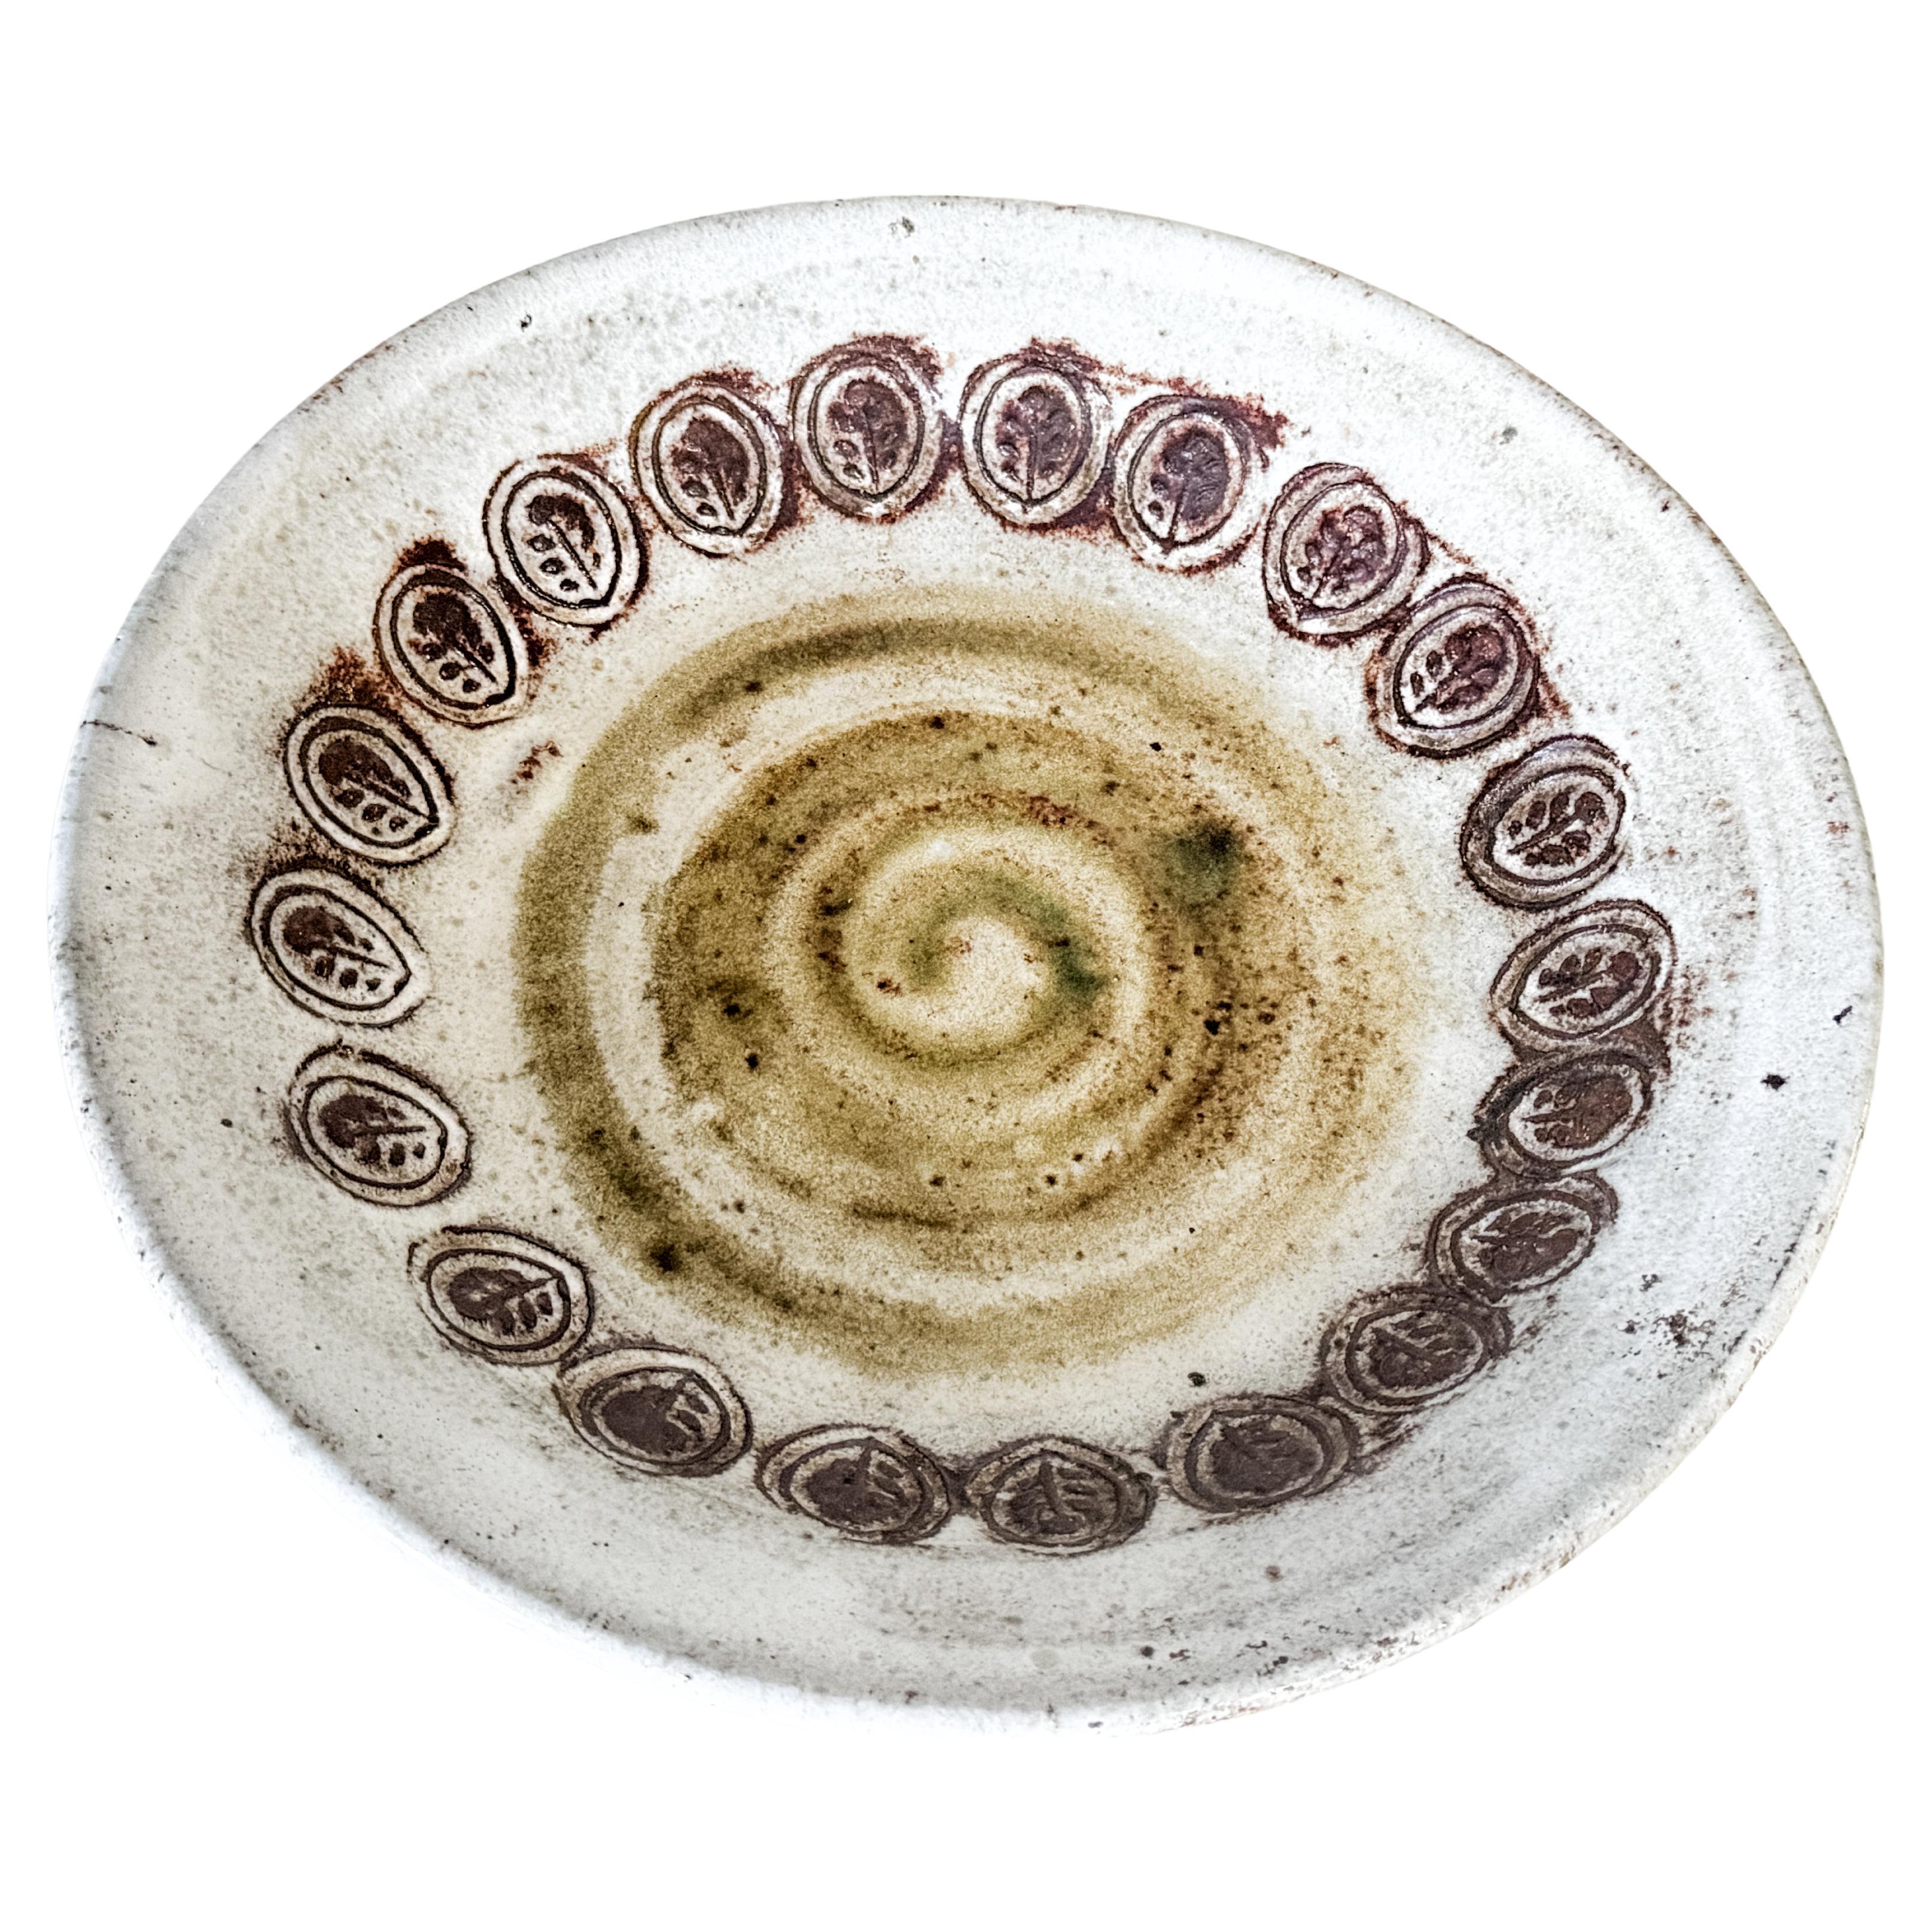 Plat décoratif en céramique française  (c. 1960) par Albert Thiry. Plat en céramique en forme de bateau, à l'extérieur émaillé blanc laiteux. A l'intérieur du plat, on retrouve la même glaçure de base mélangée à des motifs de chardons en brun et